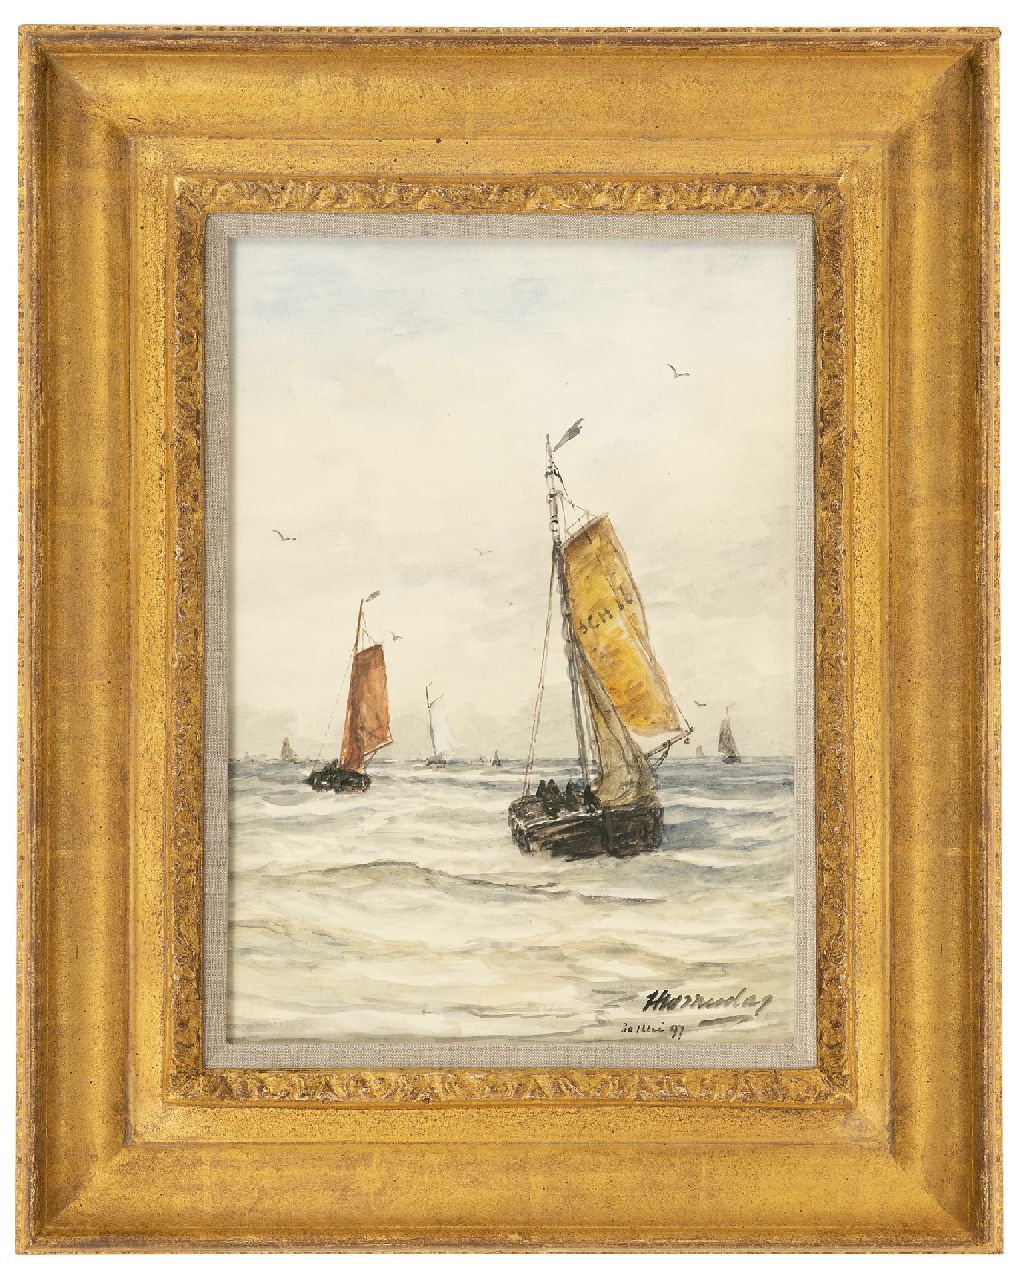 Mesdag H.W.  | Hendrik Willem Mesdag, Na de storm, aquarel en gouache op papier 36,6 x 26,7 cm, gesigneerd rechtsonder en gedateerd 30 Mei 97